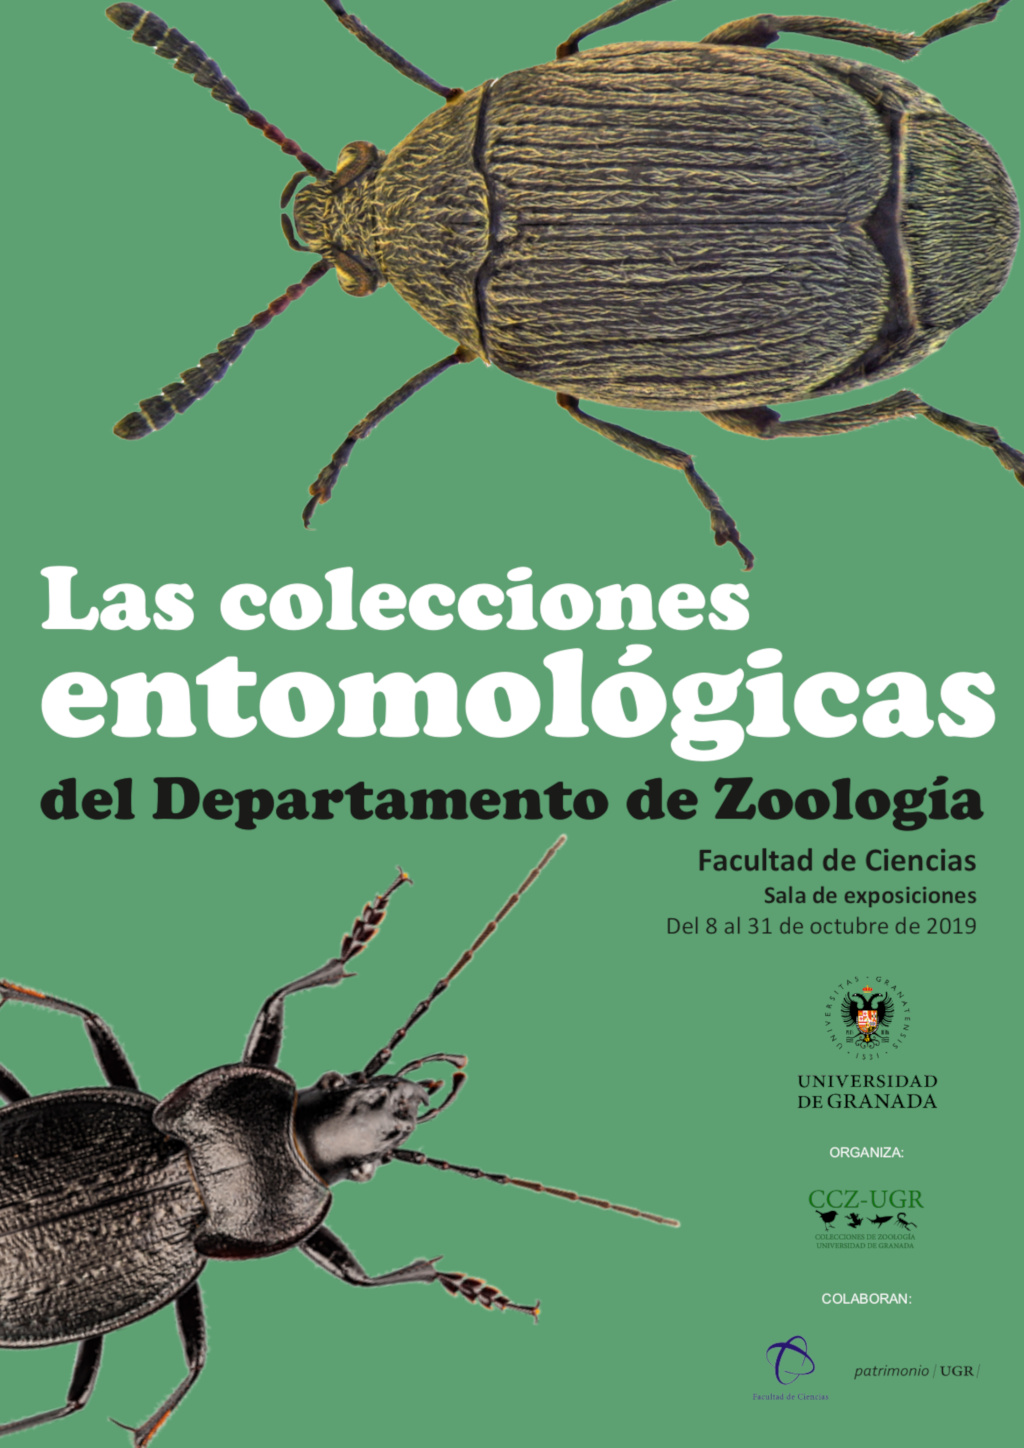 Las colecciones entomológicas del Departamento de Zoología